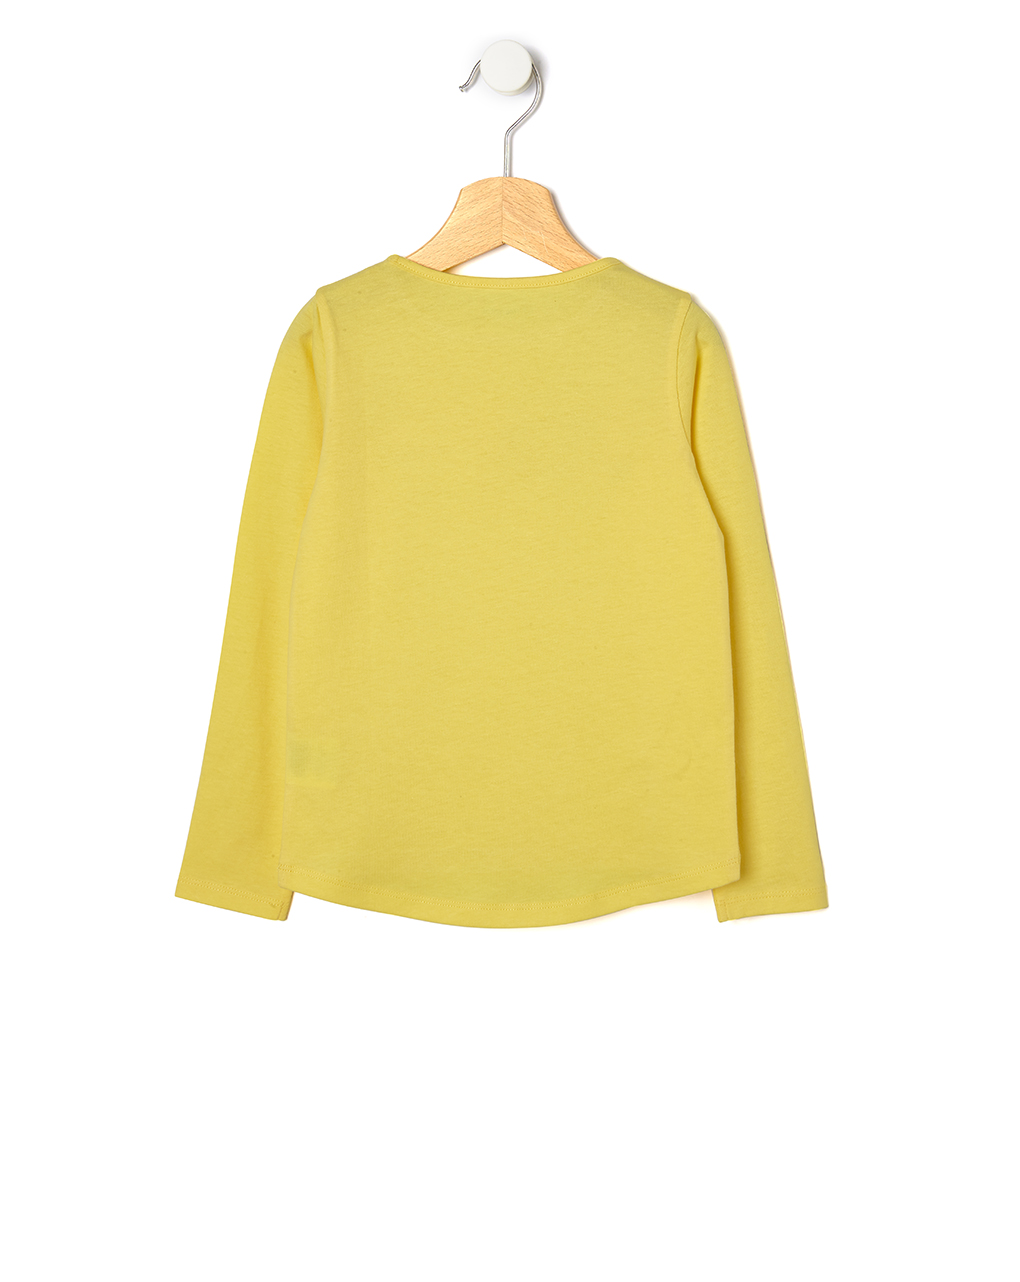 T-shirt jersey με στάμπα glitter κίτρινο για κορίτσι - Prénatal